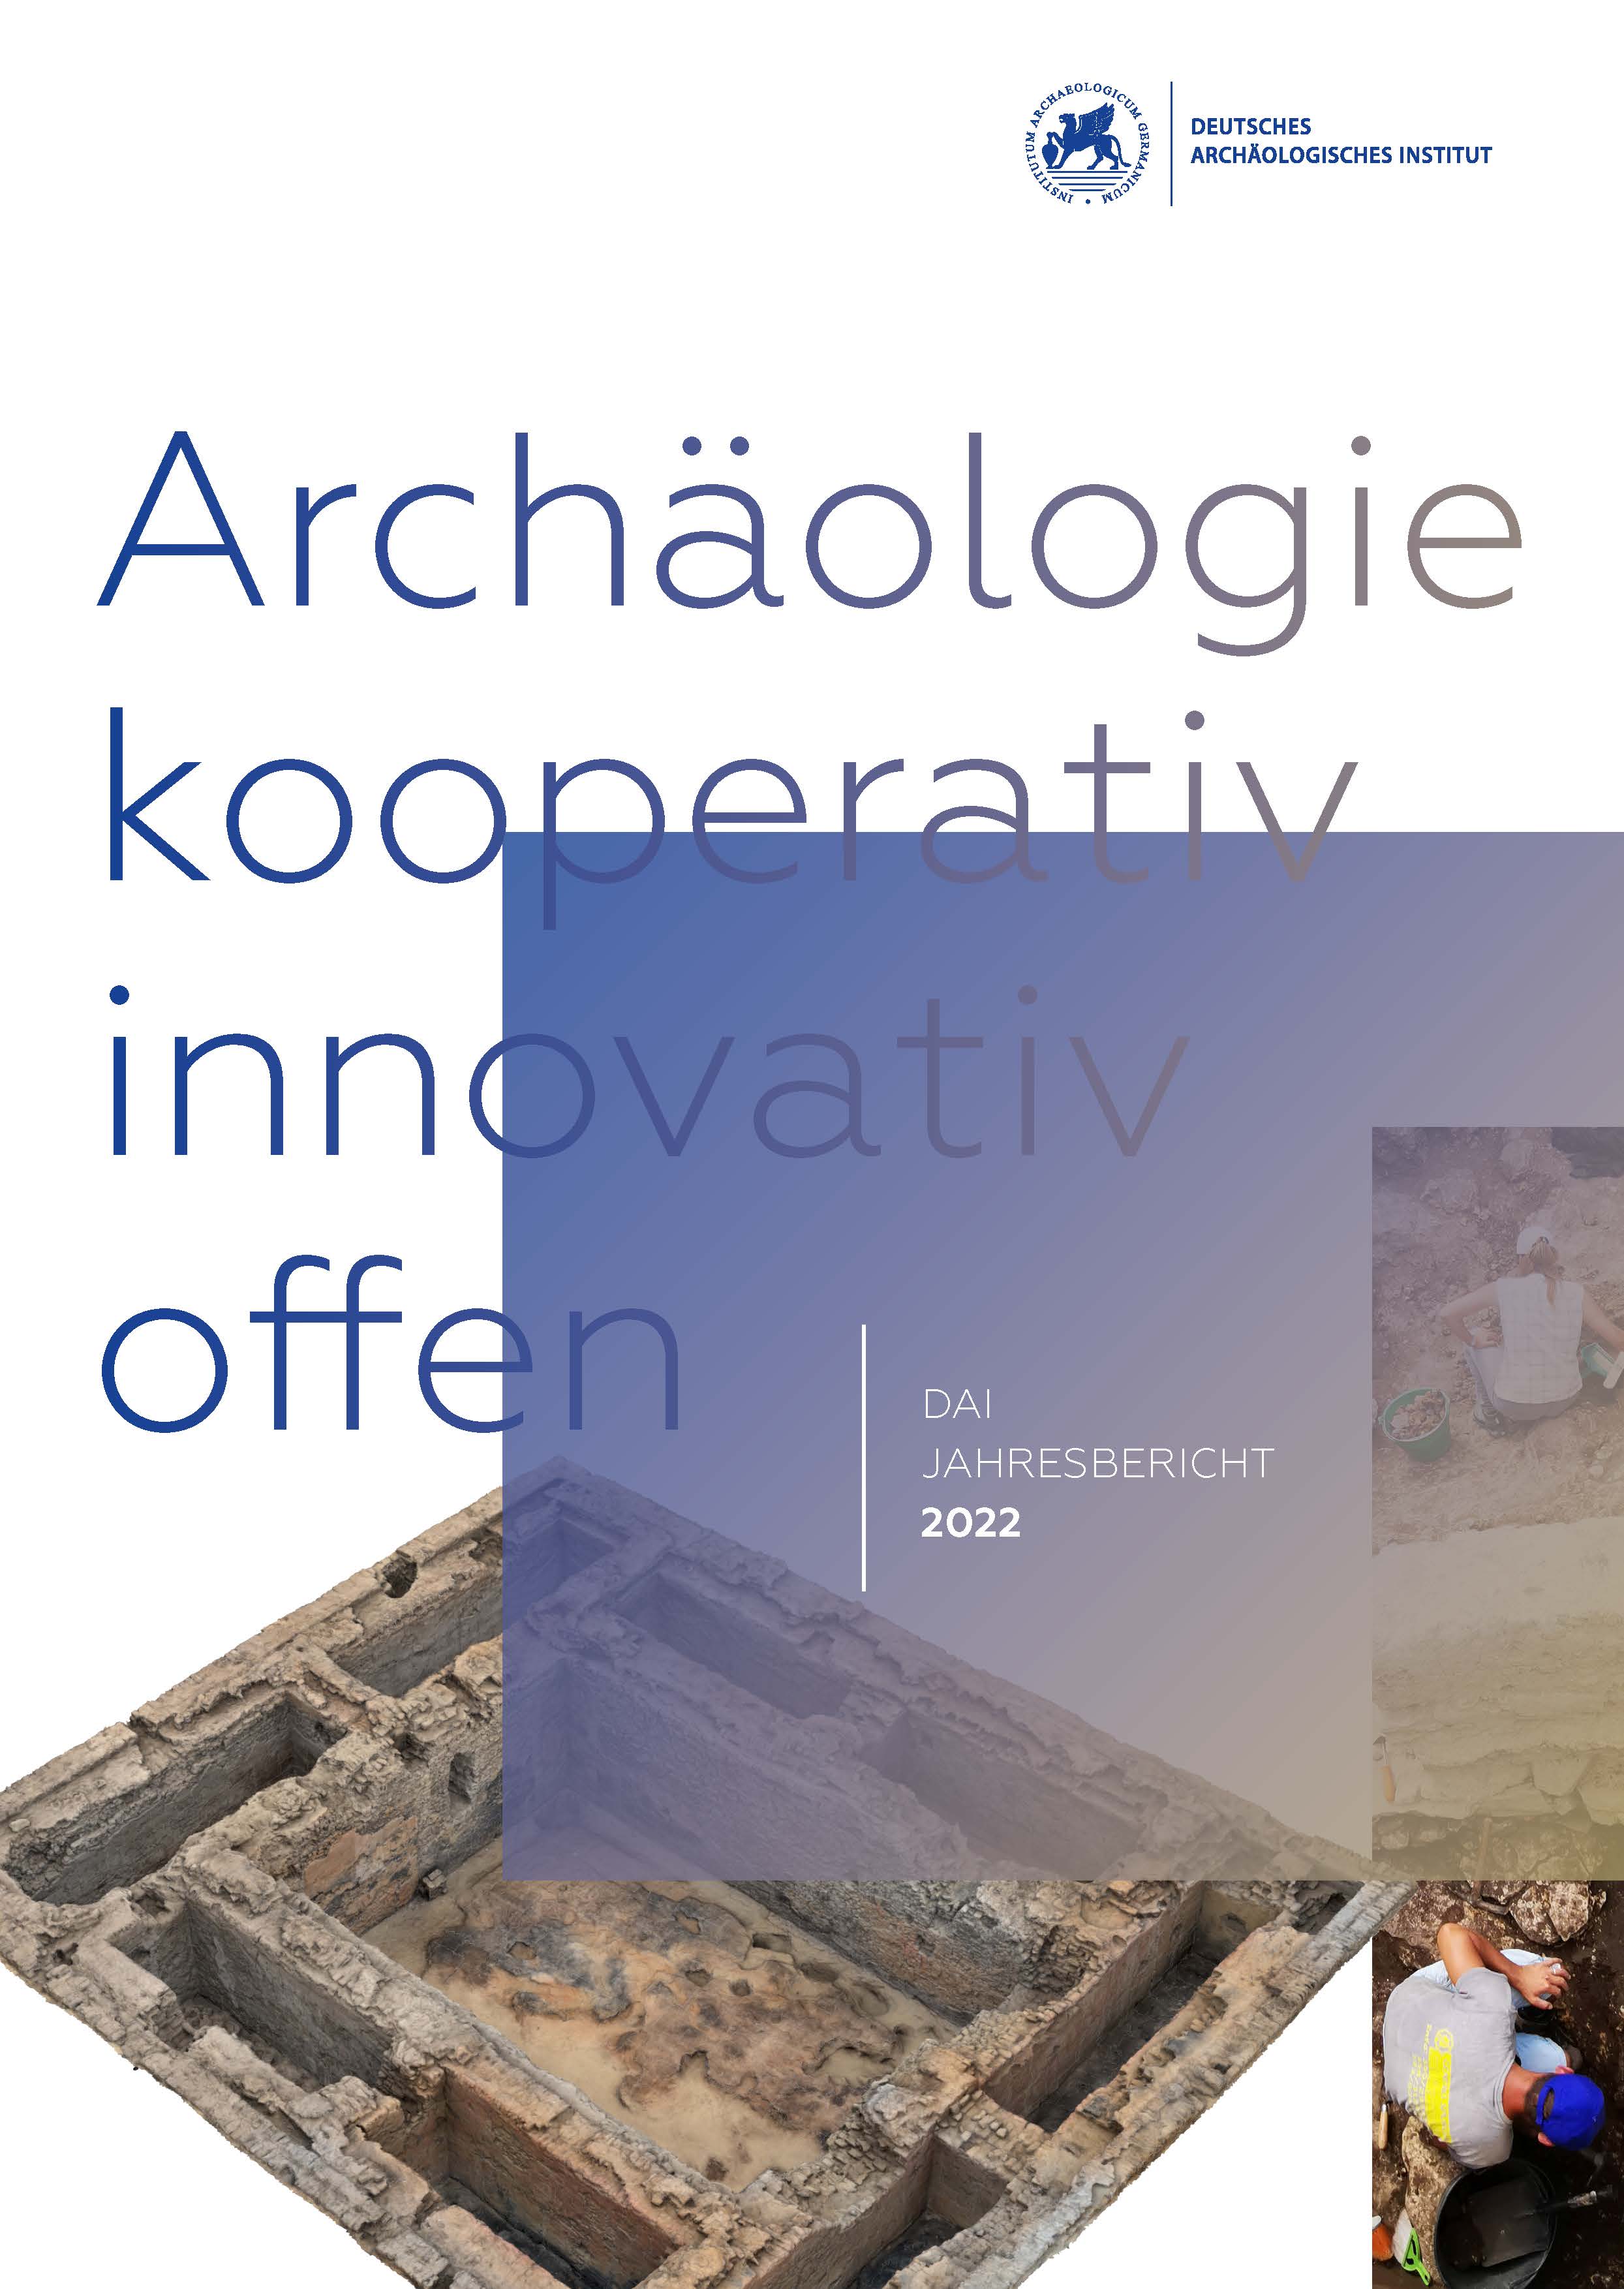 					Ansehen e-Jahresbericht 2022 des Deutschen Archäologischen Instituts
				